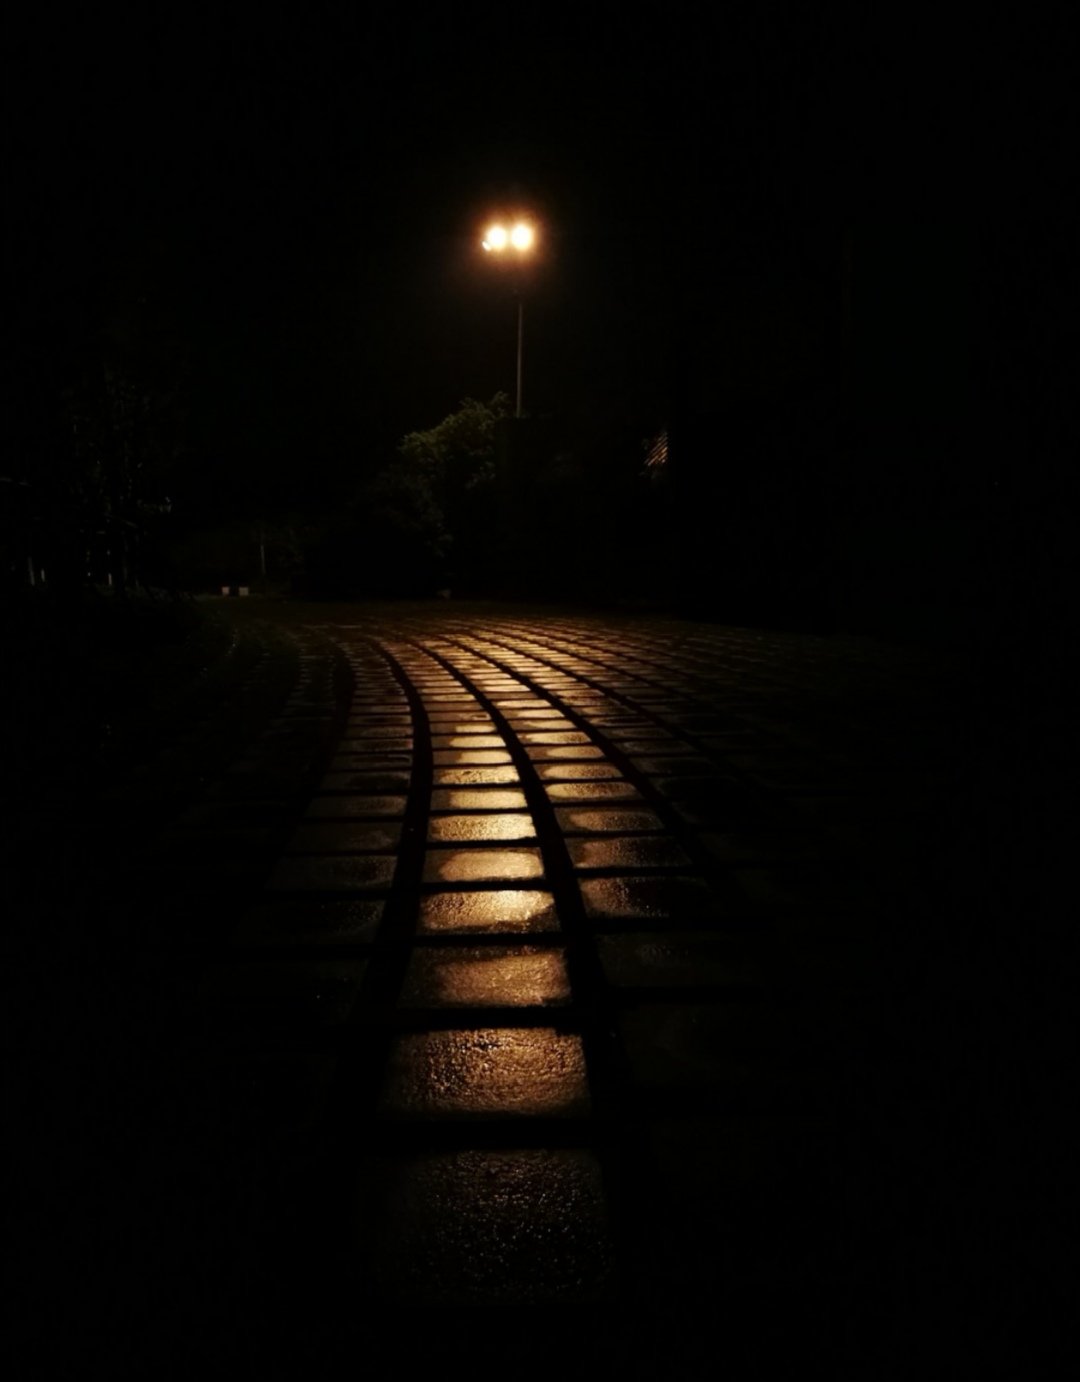 骑行时常骑夜路,一个人骑在黑夜里,并不觉得恐惧,只是略有点凄凉